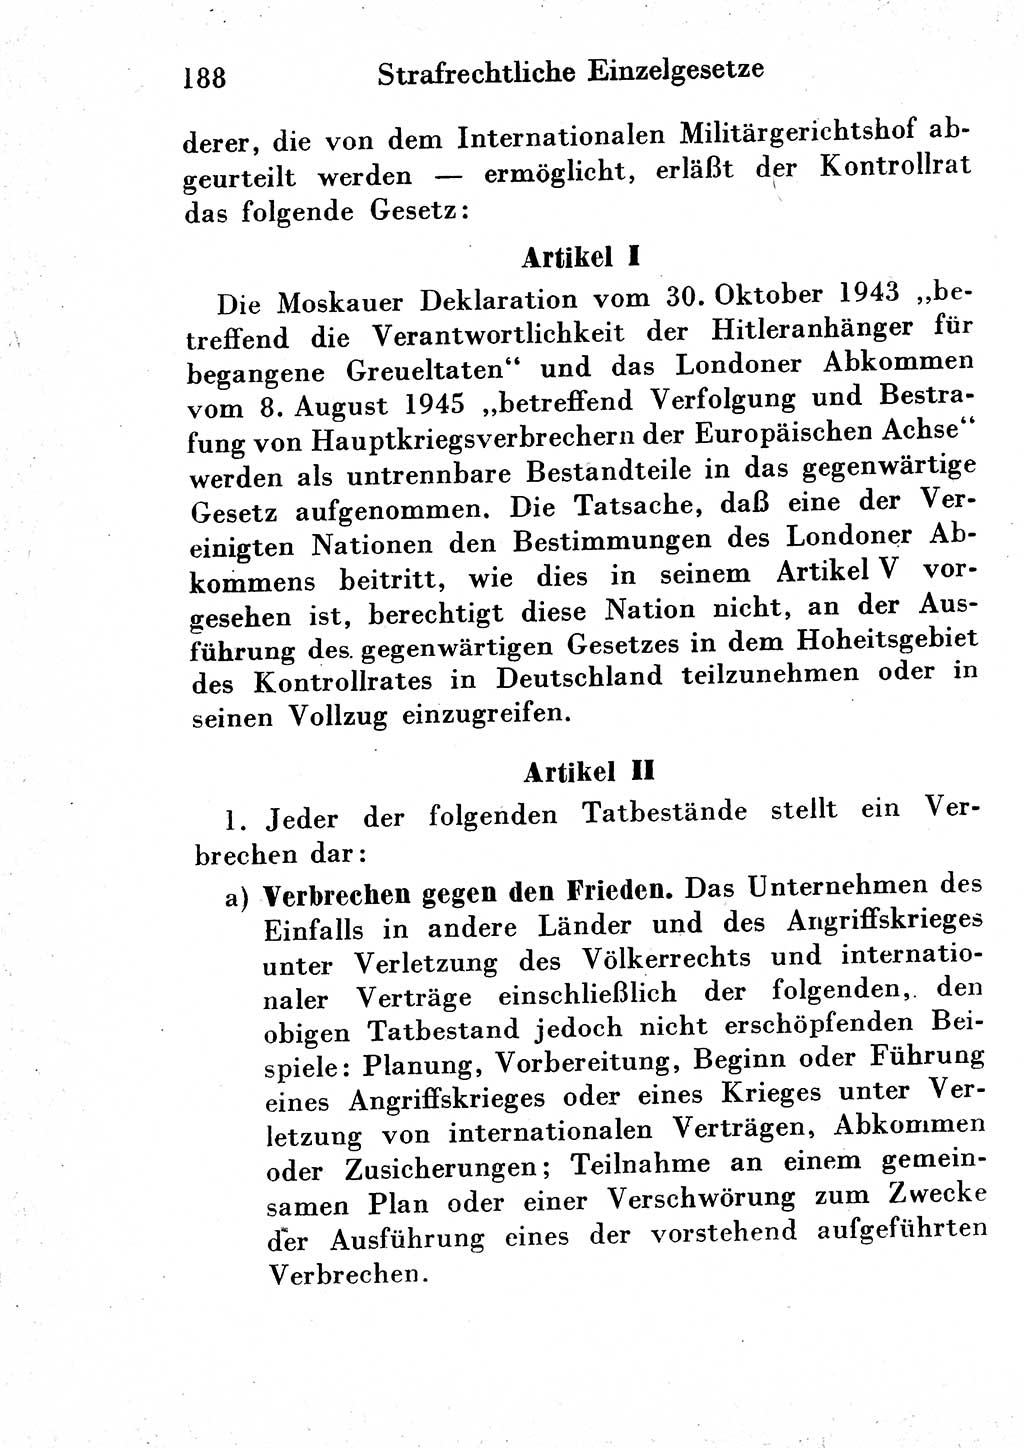 Strafgesetzbuch (StGB) und andere Strafgesetze [Deutsche Demokratische Republik (DDR)] 1954, Seite 188 (StGB Strafges. DDR 1954, S. 188)